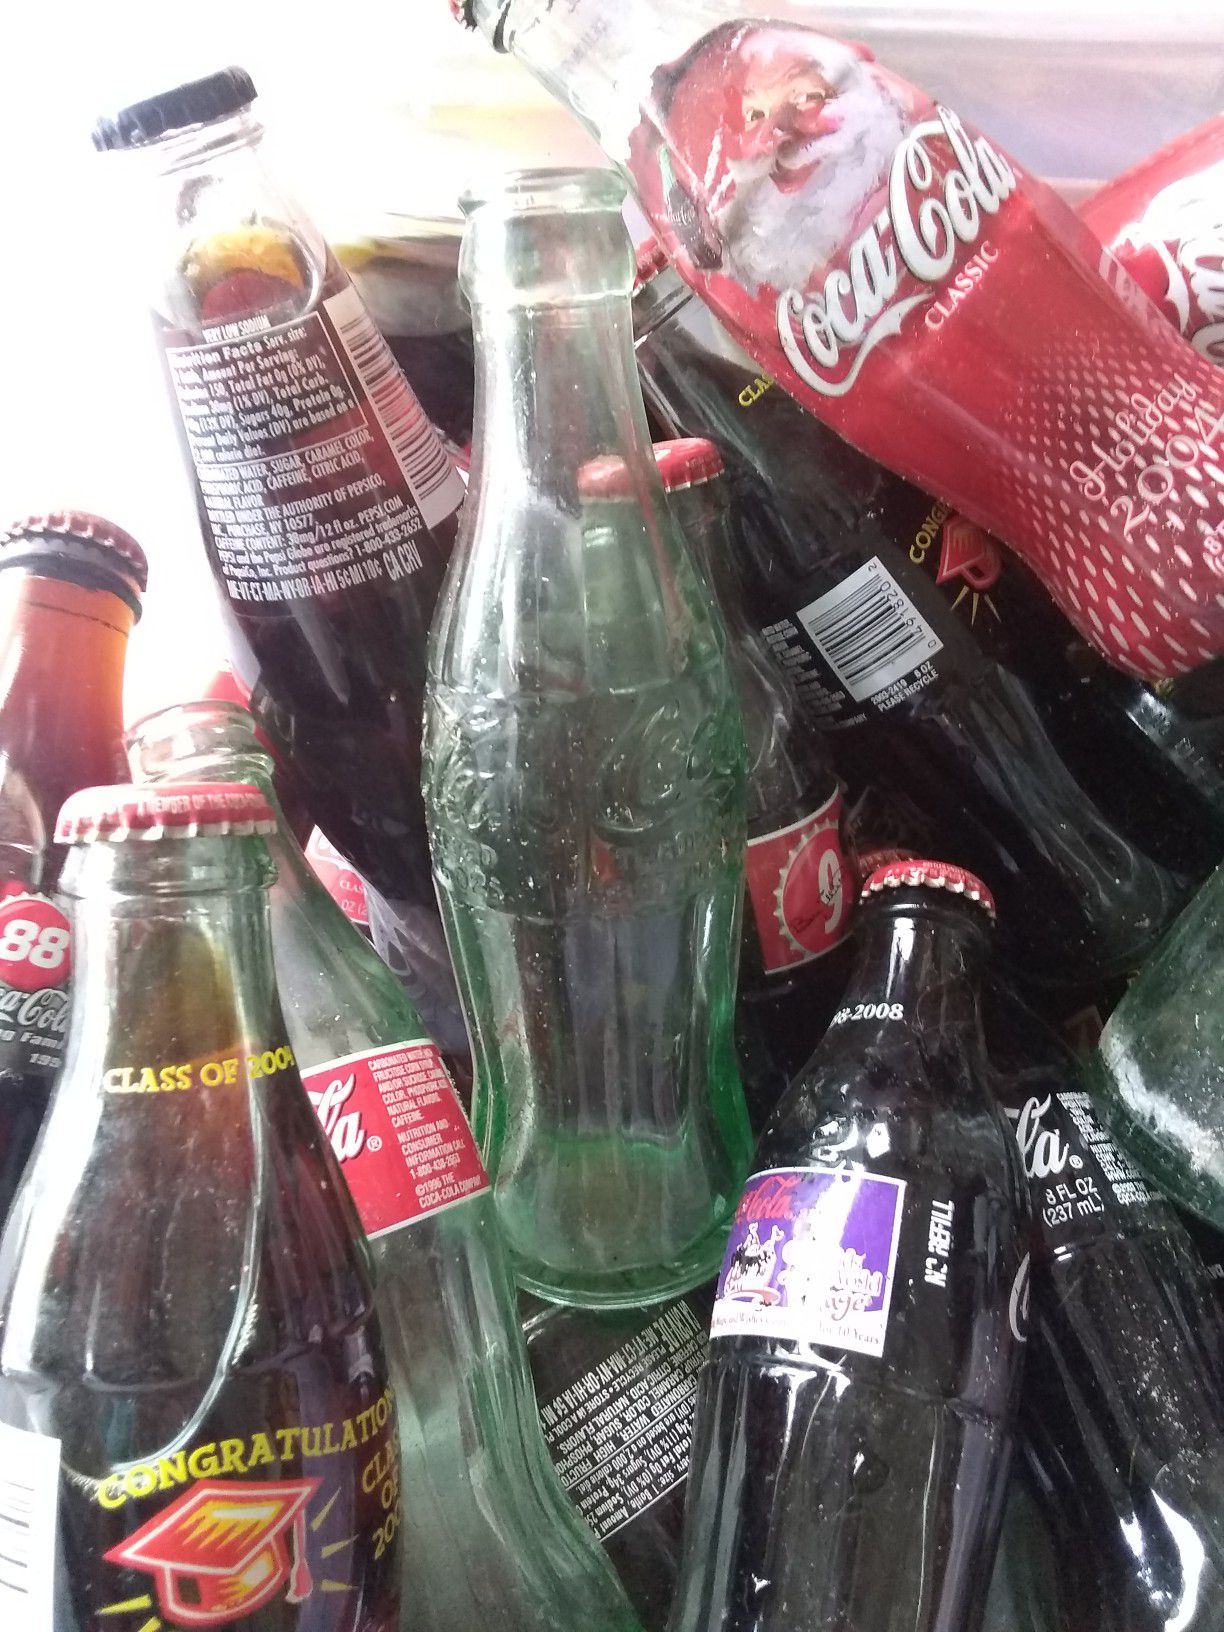 Old coke bottles